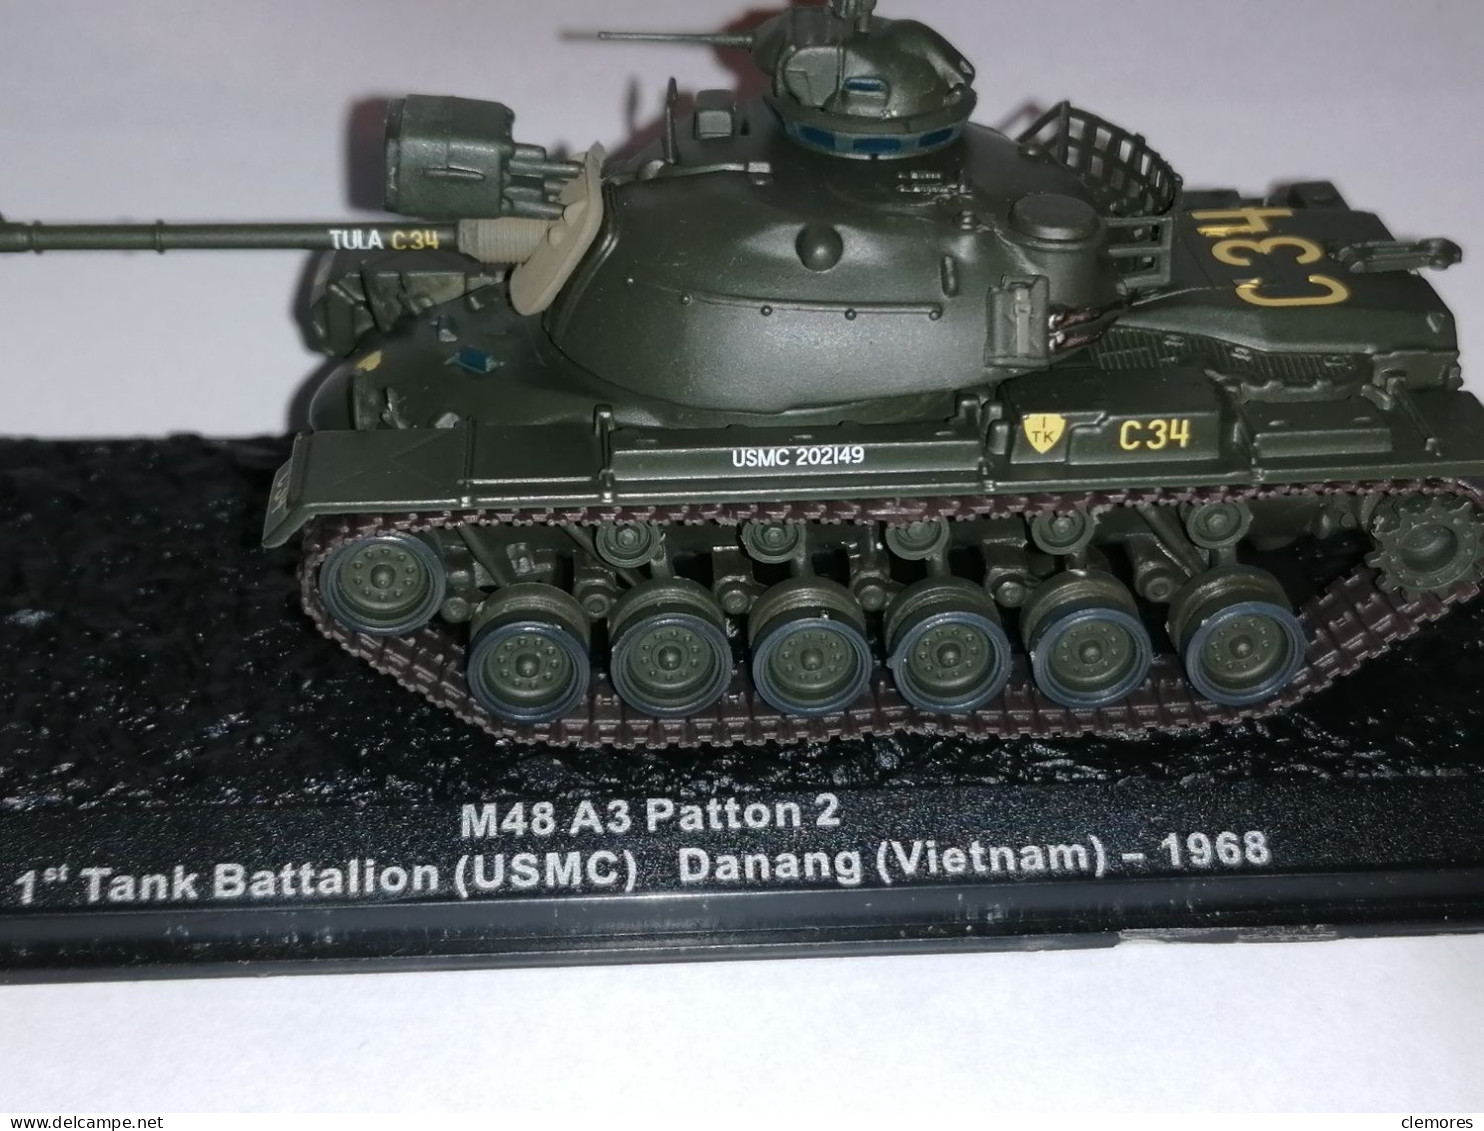 Maquette 1/72 M48 A3 Patton 2 Vietnam 1968 - Militaire Voertuigen